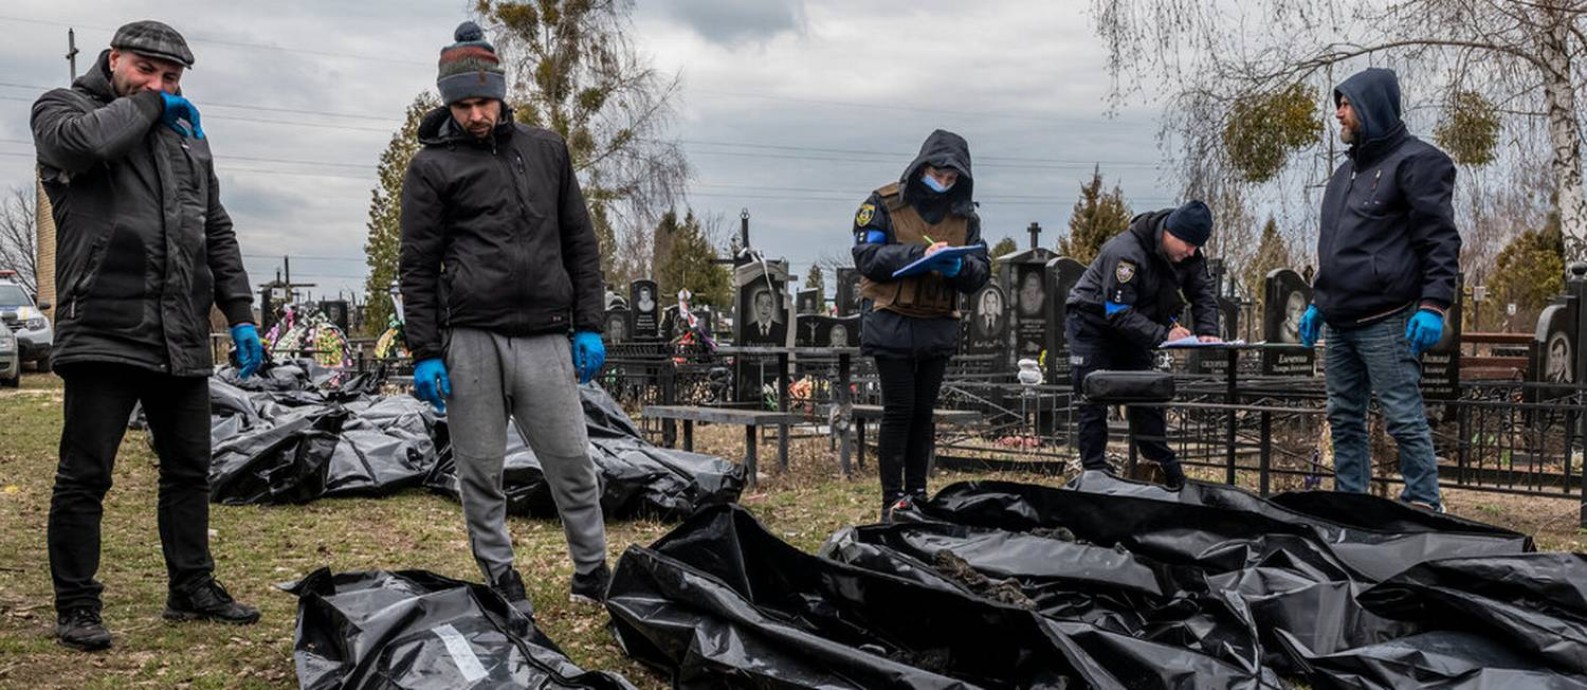 Restos queimados de uma família de quatro pessoas foram encontrados em uma pilha de seis corpos em Bucha Foto: Daniel Berehulak/New York Times